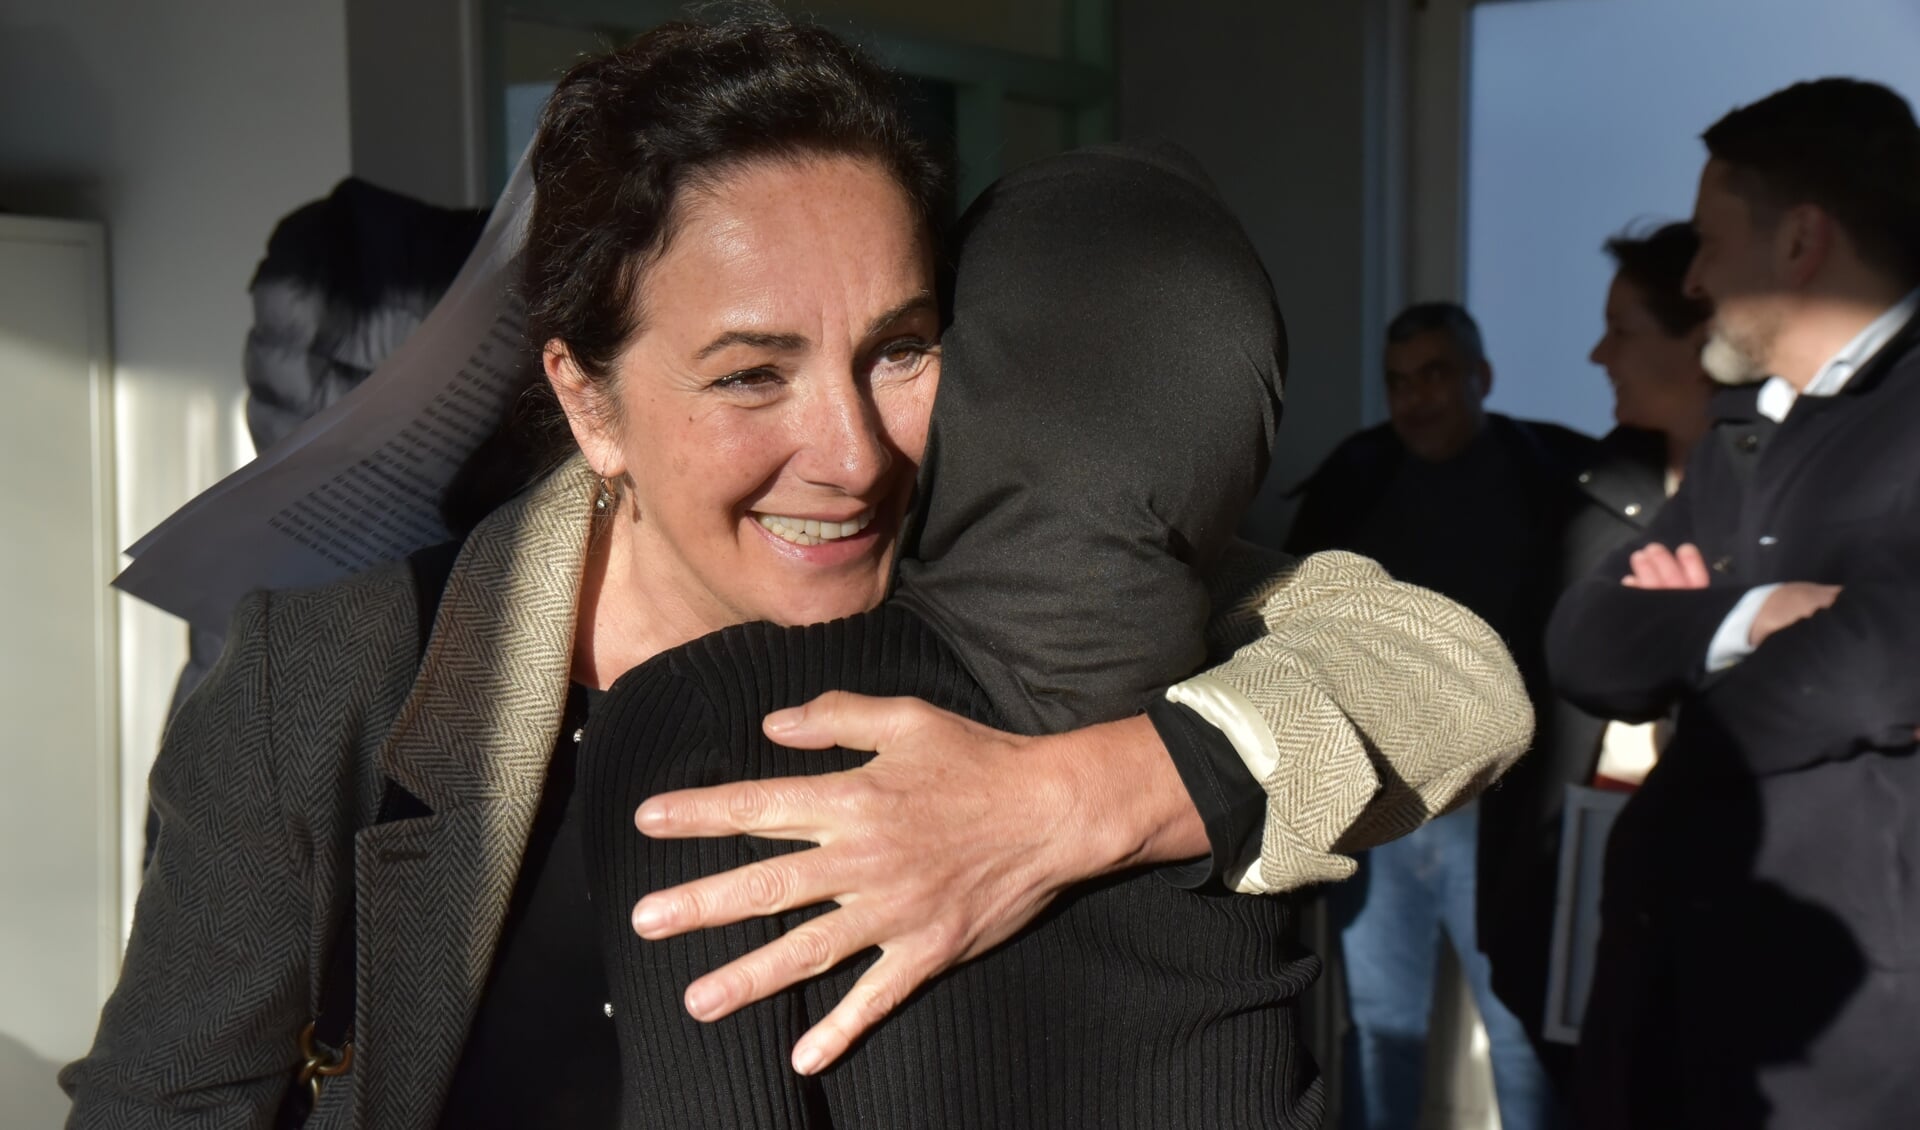 Een geëmotioneerde burgemeester geeft Studiezalenleerling Maryam een knuffel. (Brandeisfotografie)